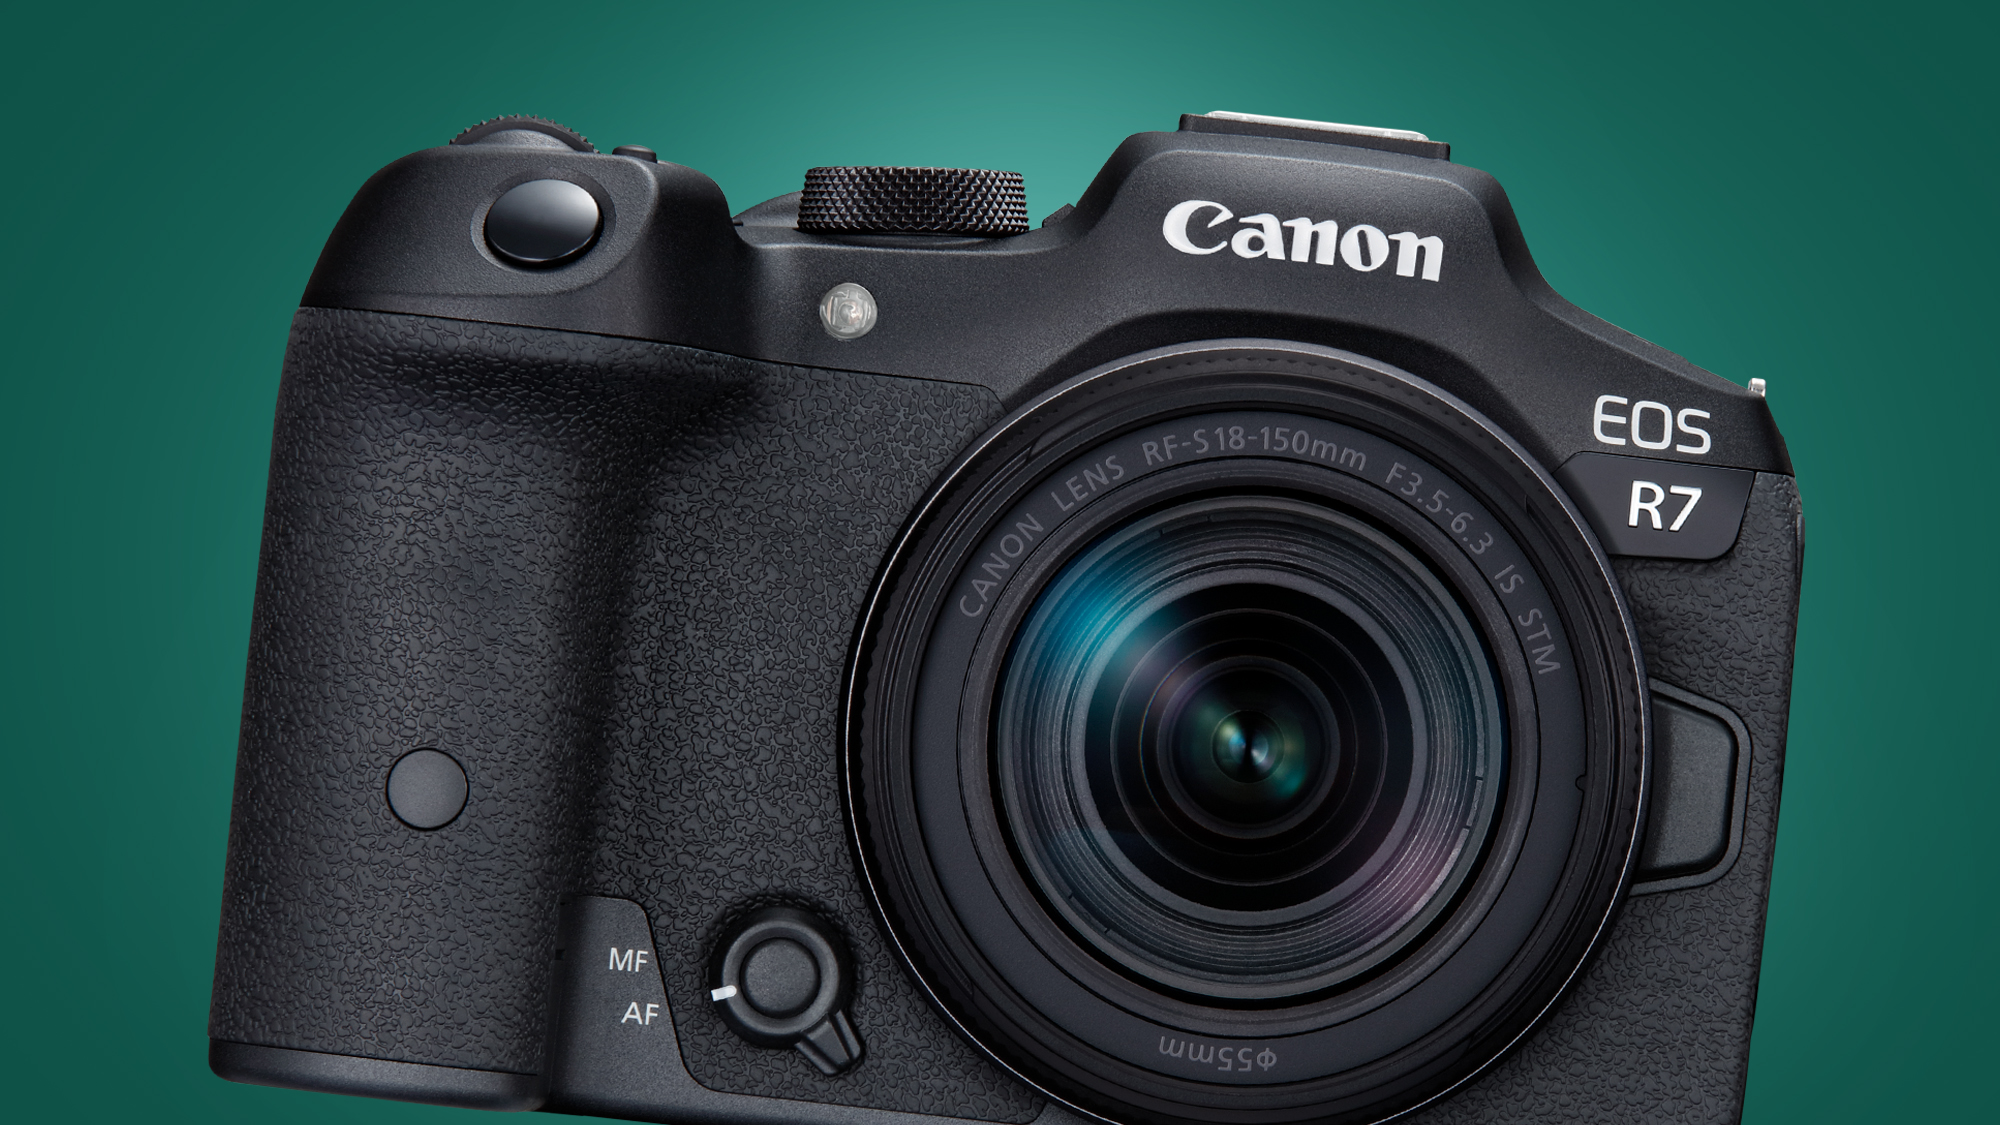 Kamera Canon EOS R7 dengan latar belakang hijau